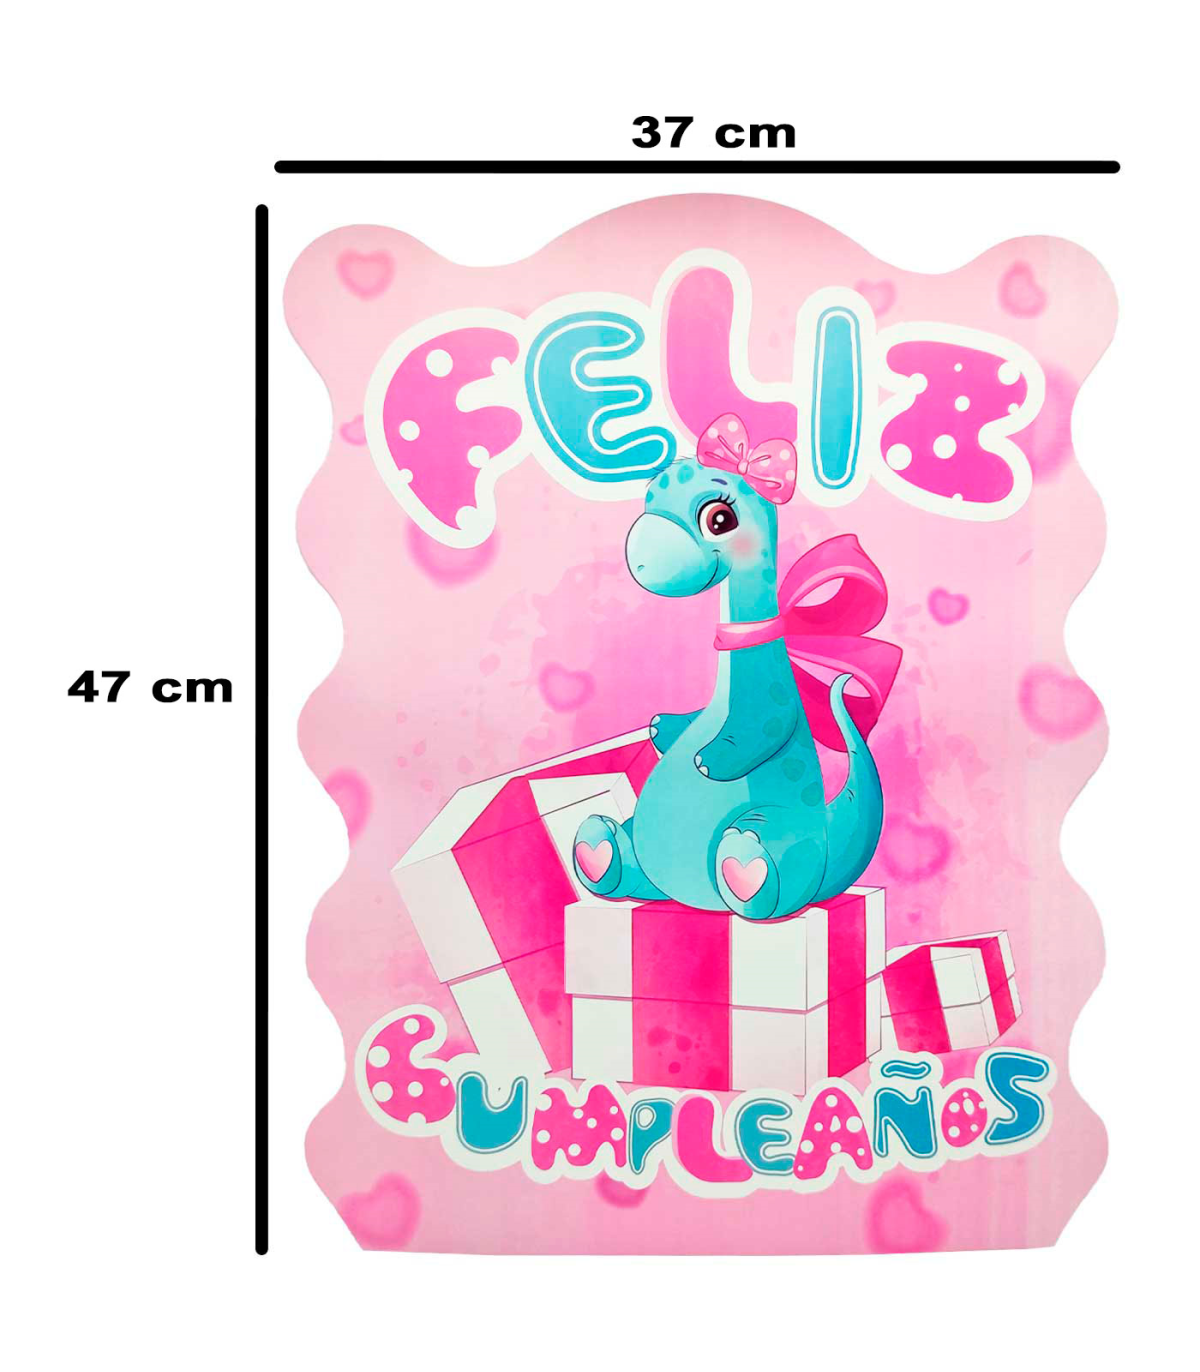 Tradineur - Piñata de dinosaurio rosa, feliz cumpleaños, cartón, rellenar  con golosinas, chuches, decoración infantil para fiest